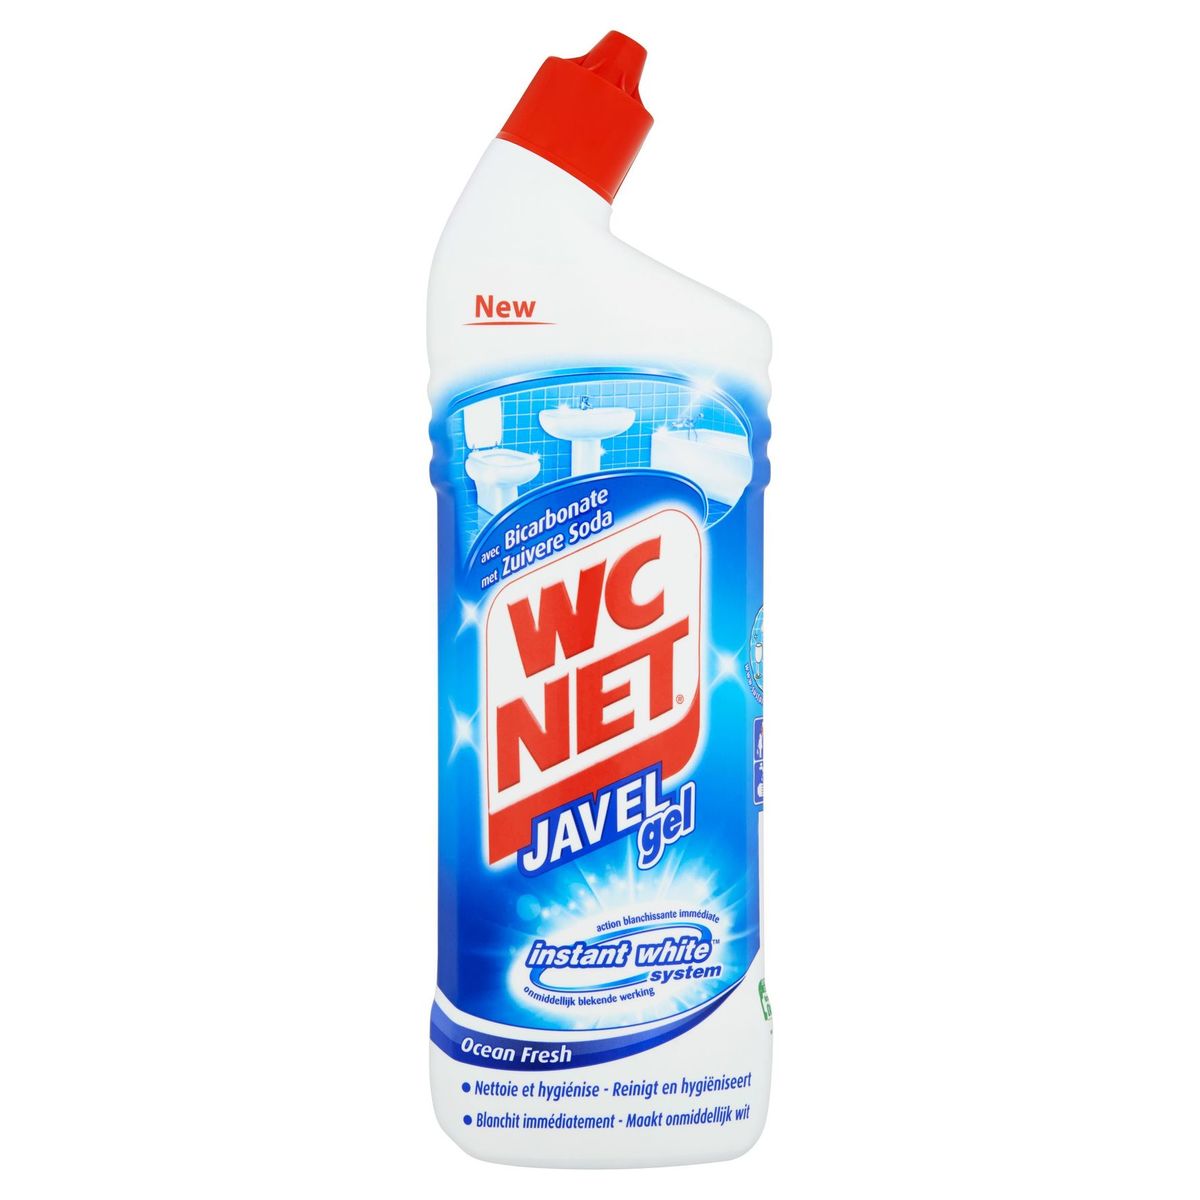 WC Net Javel Gel avec Bicarbonate Instant White System Ocean Fresh 750 ml